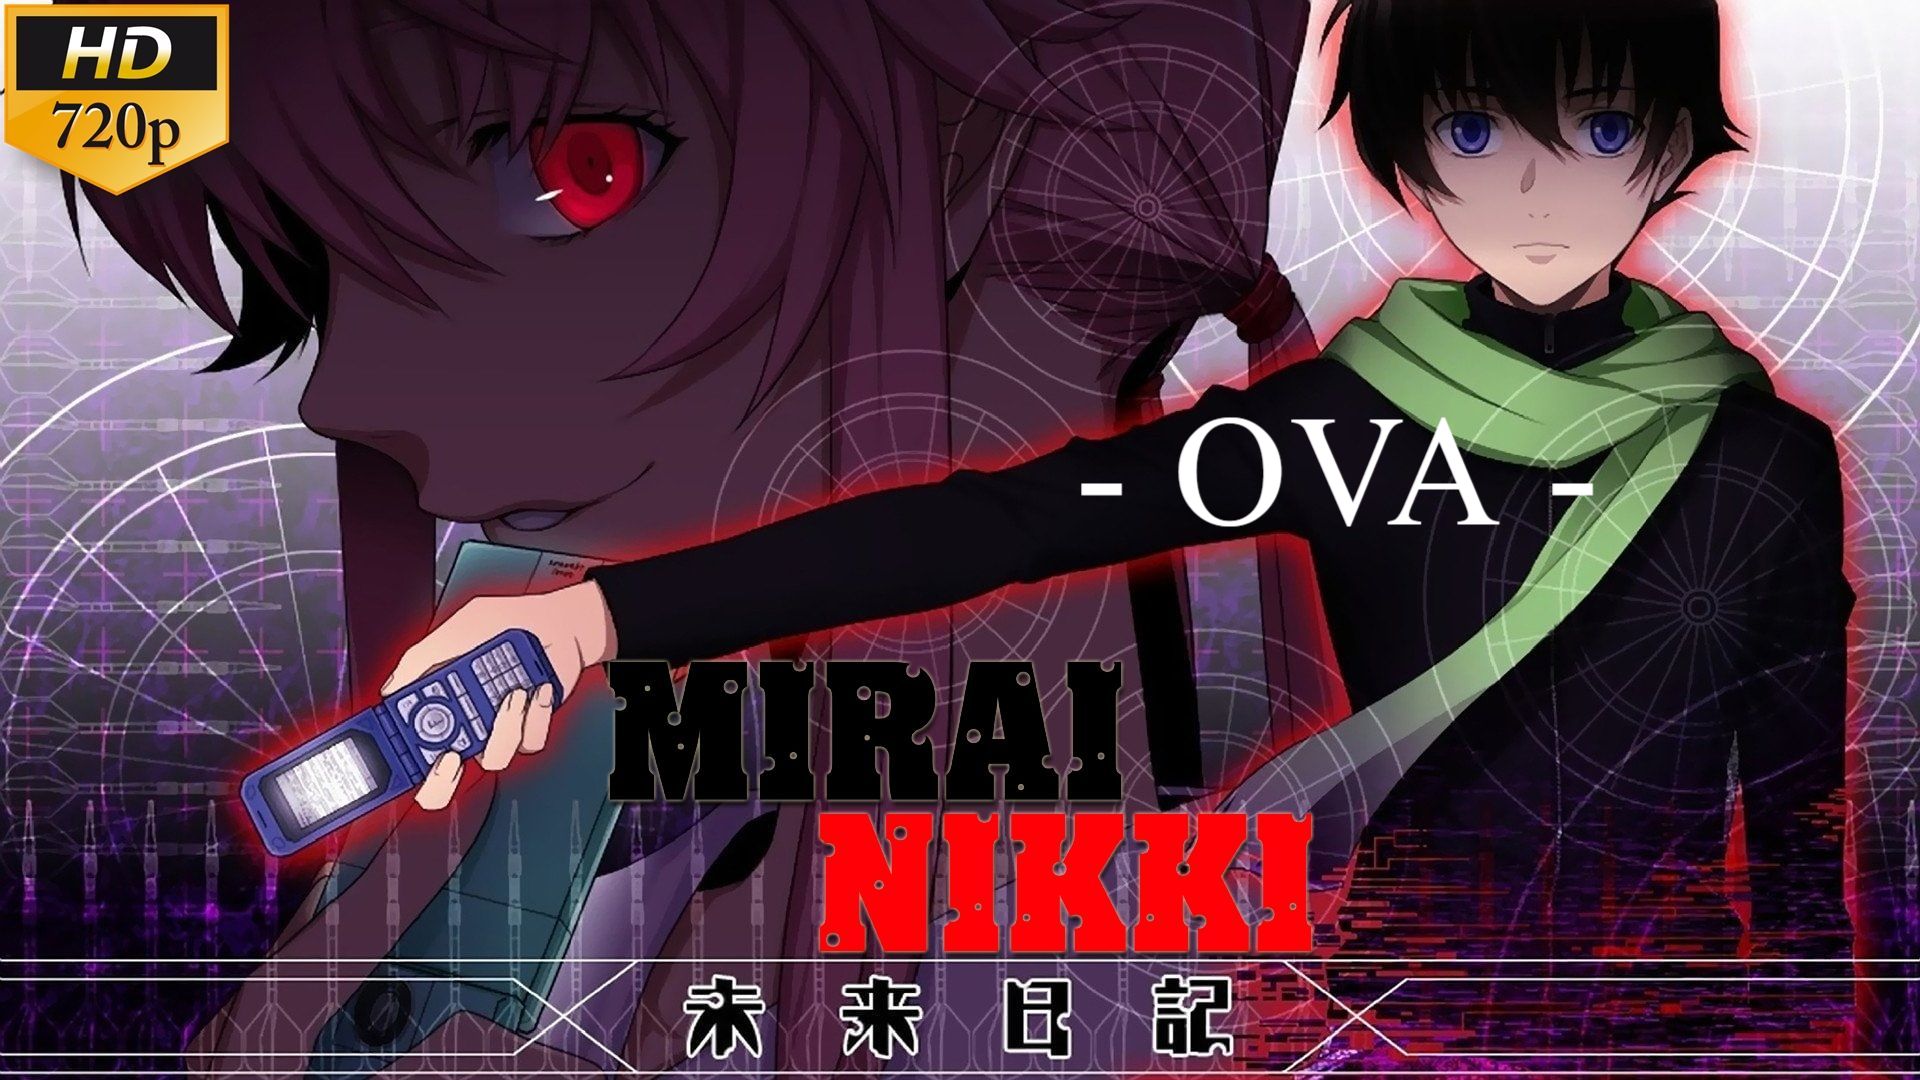 A World That Does Not Exist. — Mirai Nikki Redial (OVA)